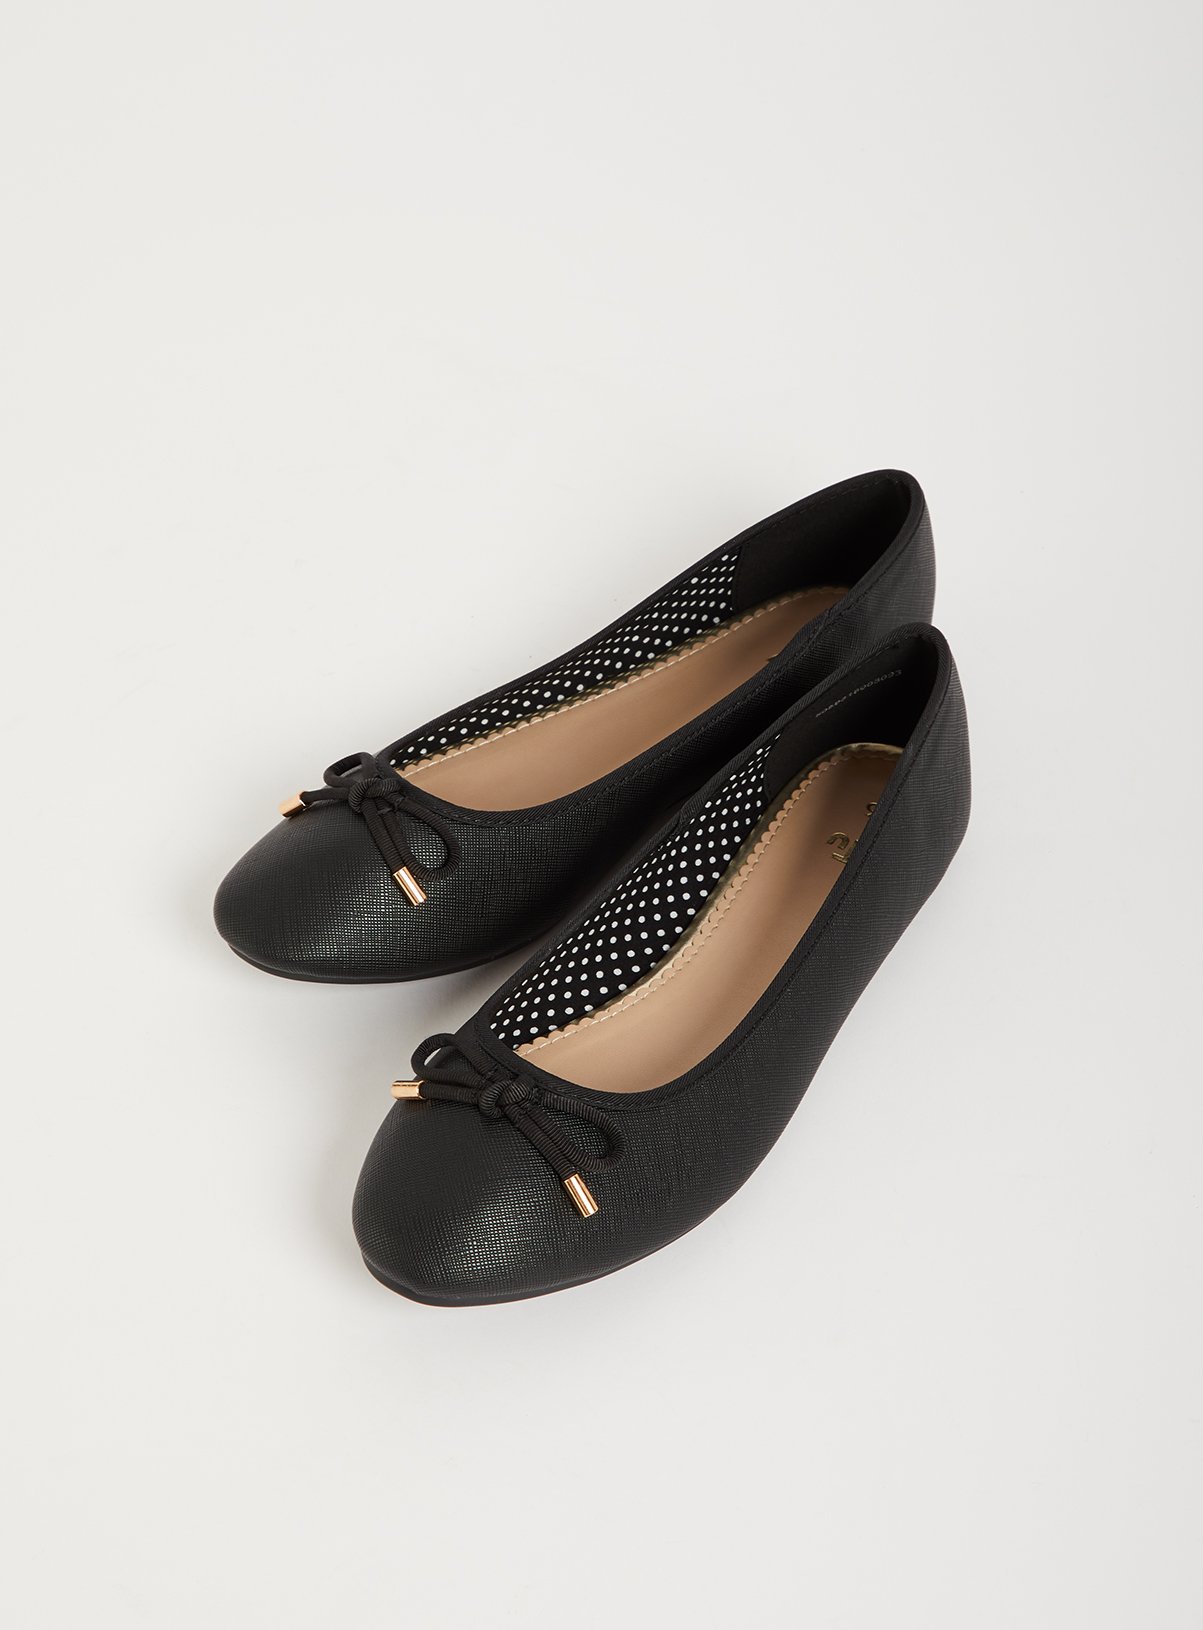 Flat Shoes | Ladies Loafers \u0026 Flats 